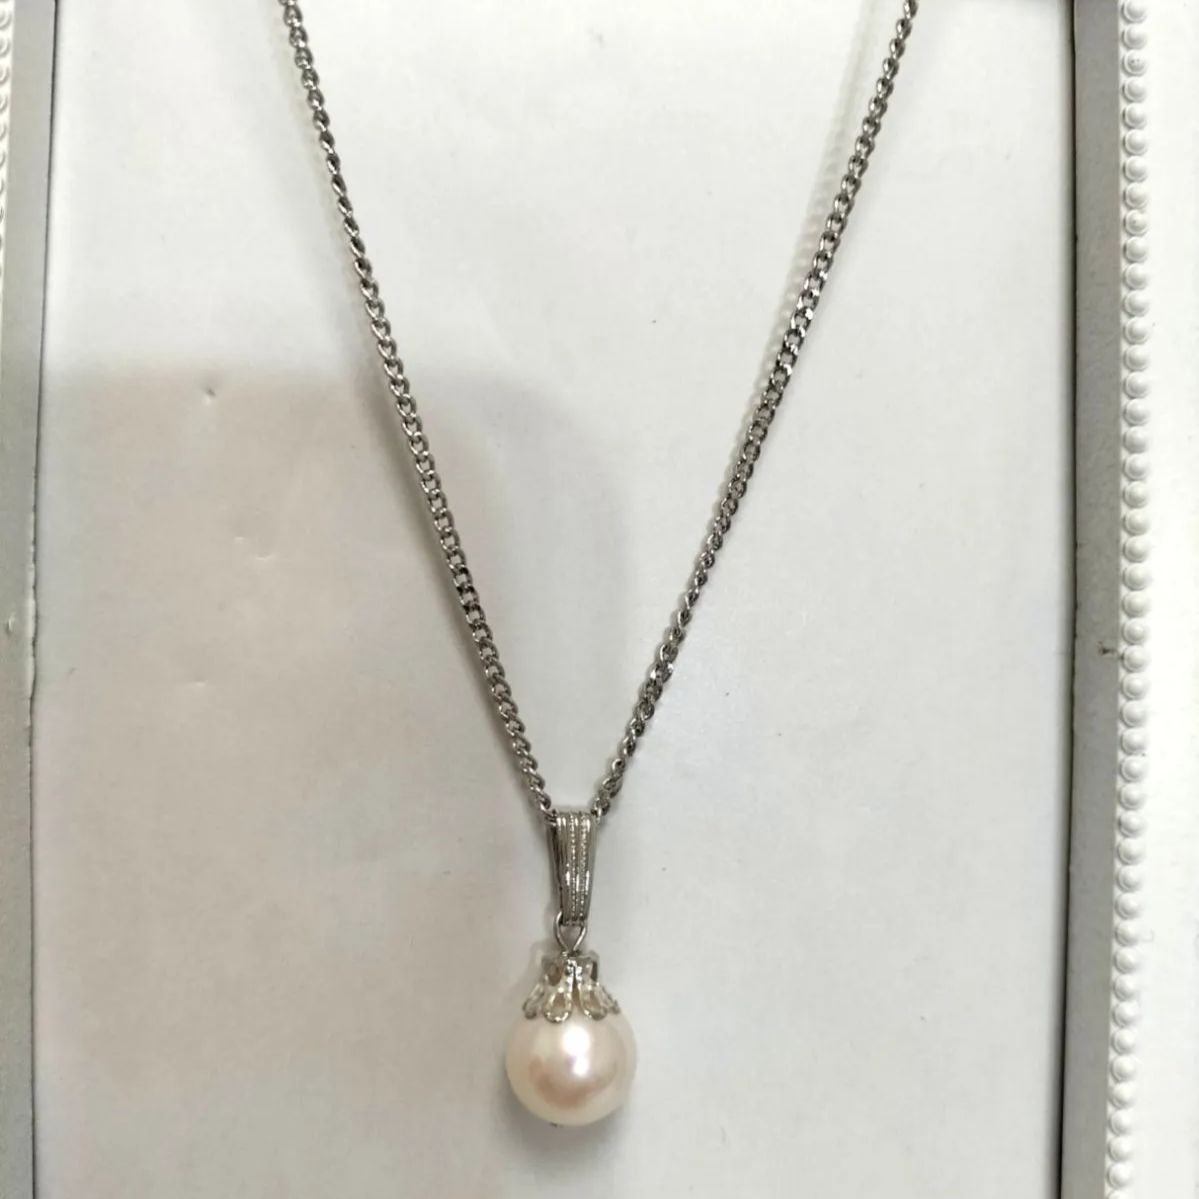 あこや本真珠（日本産）のナチュラルグレーカラー珠のマグネット式ブレスレット☆